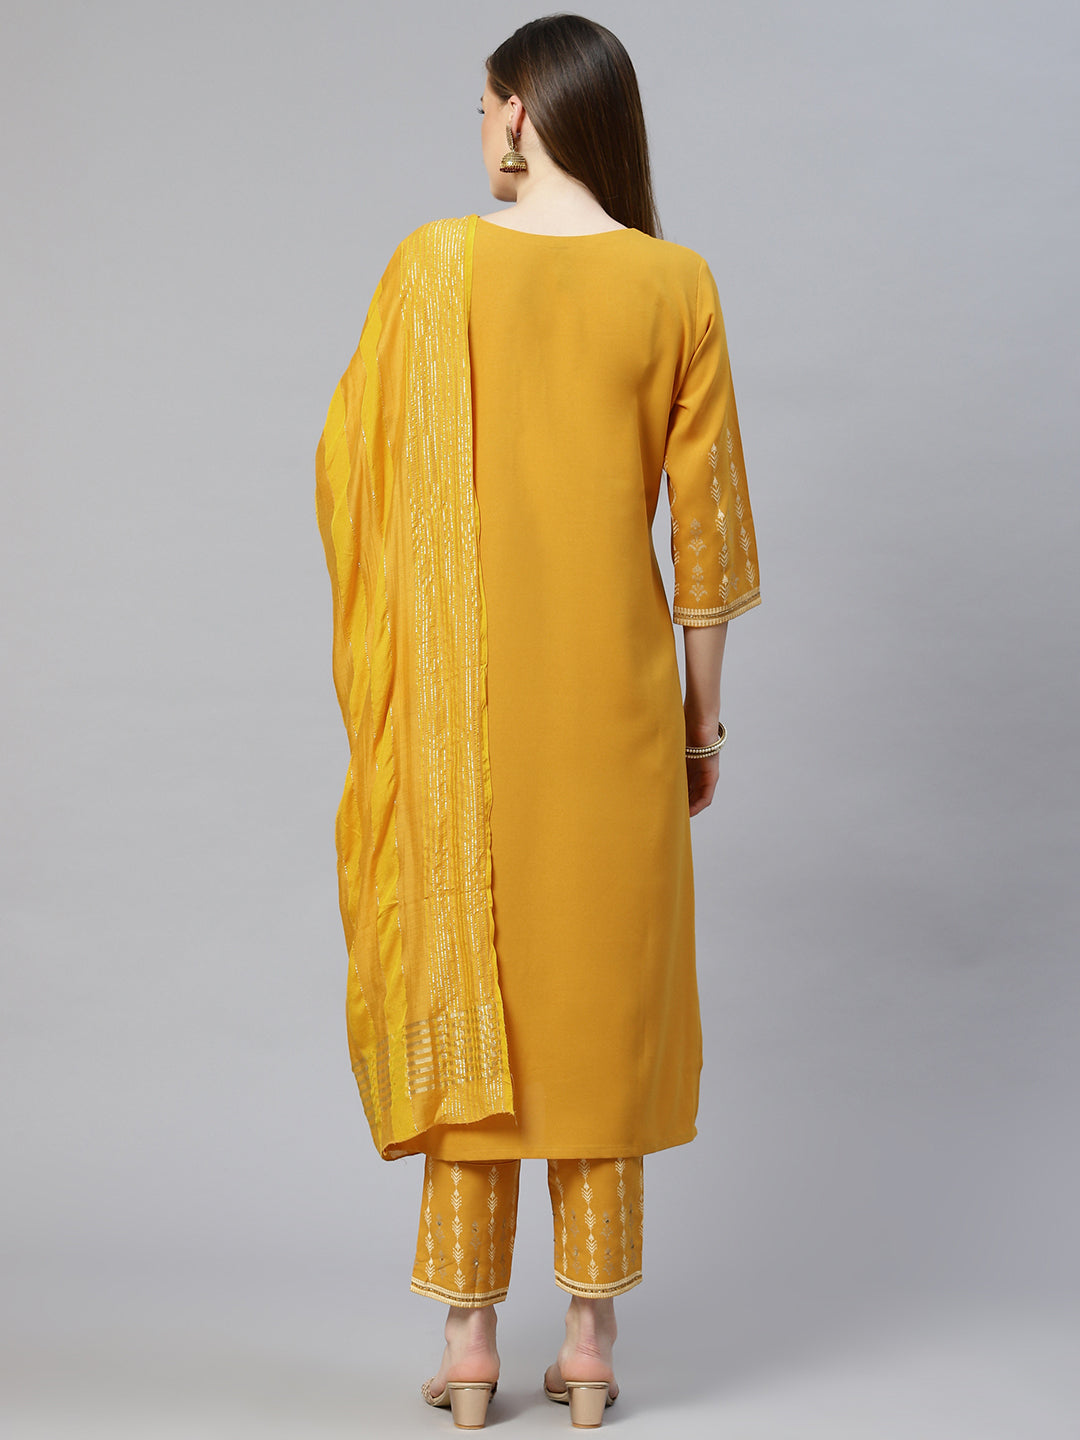 Women's Mustard Yellow Rayon Kurta With Pant And Dupatta Set by Ziyaa (3pcs Set)